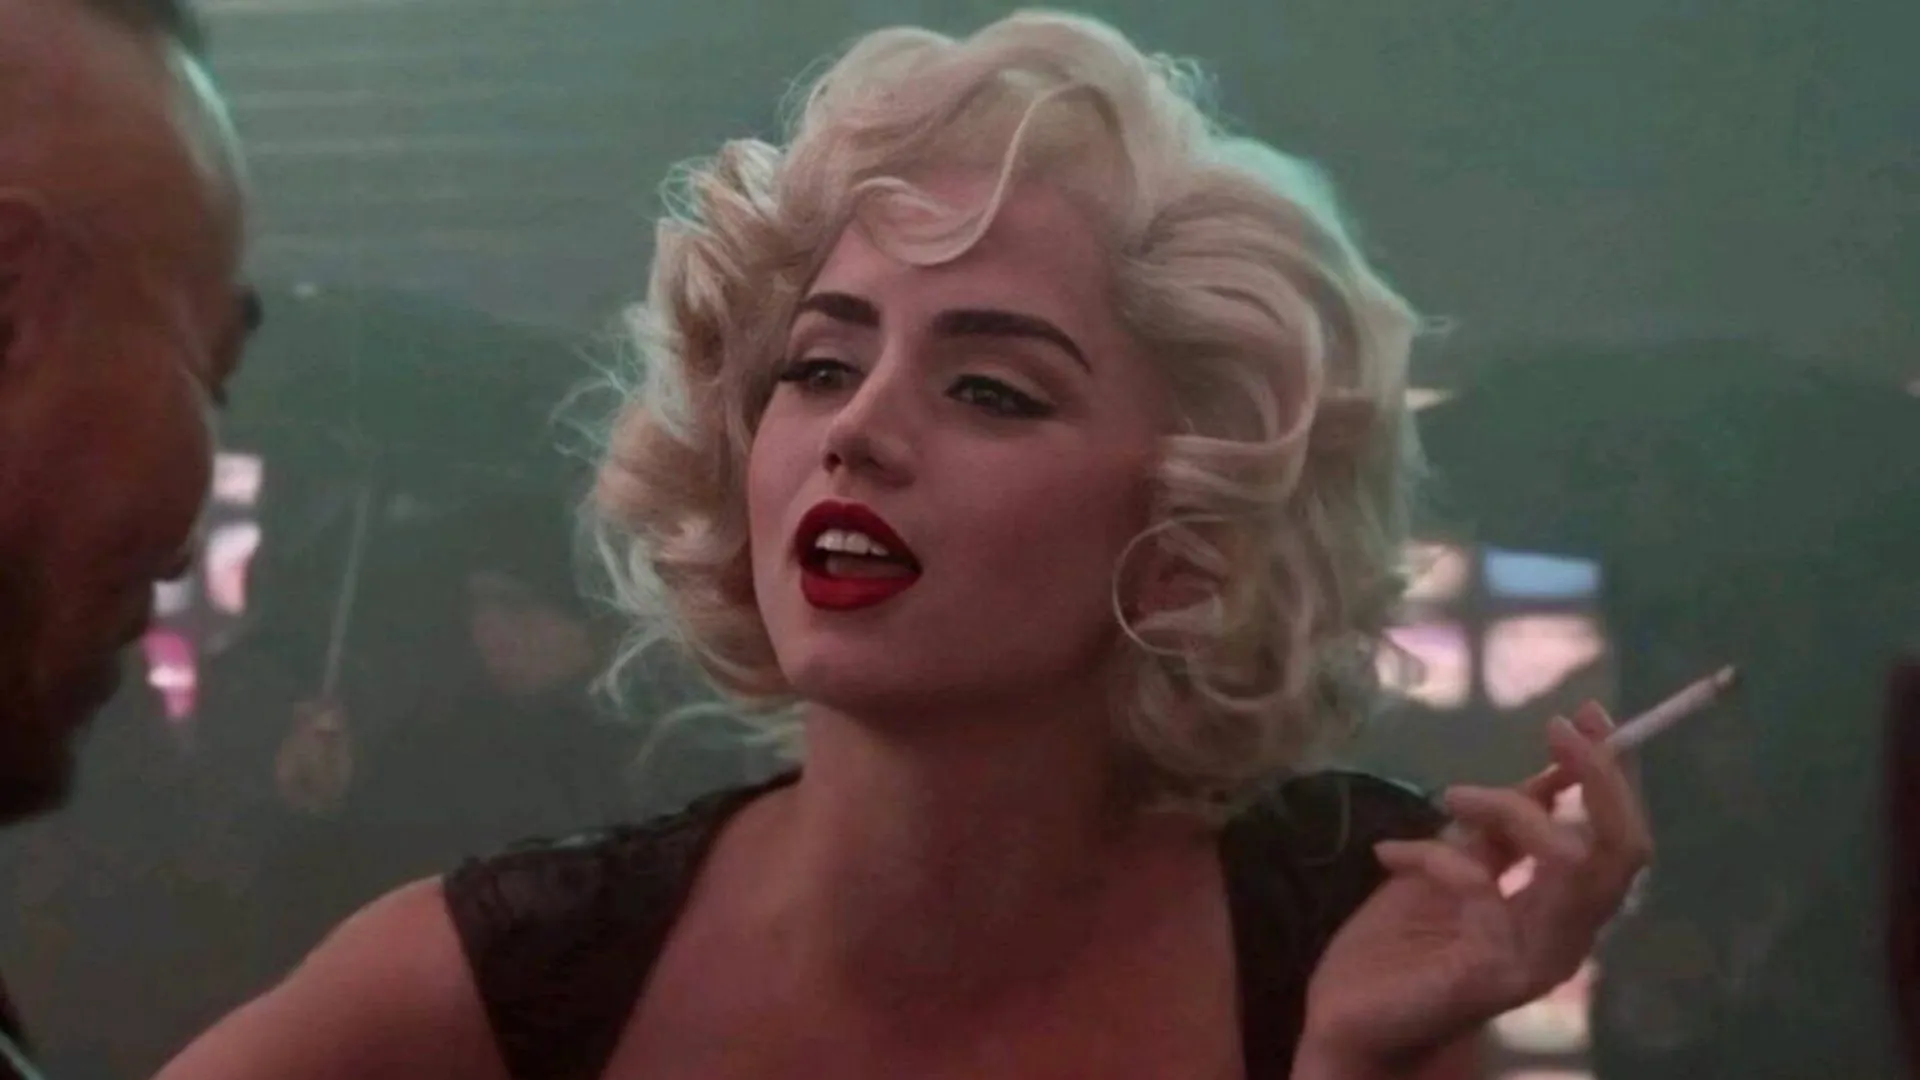 Blonde' star Ana de Armas stuns as Marilyn Monroe in behind-the